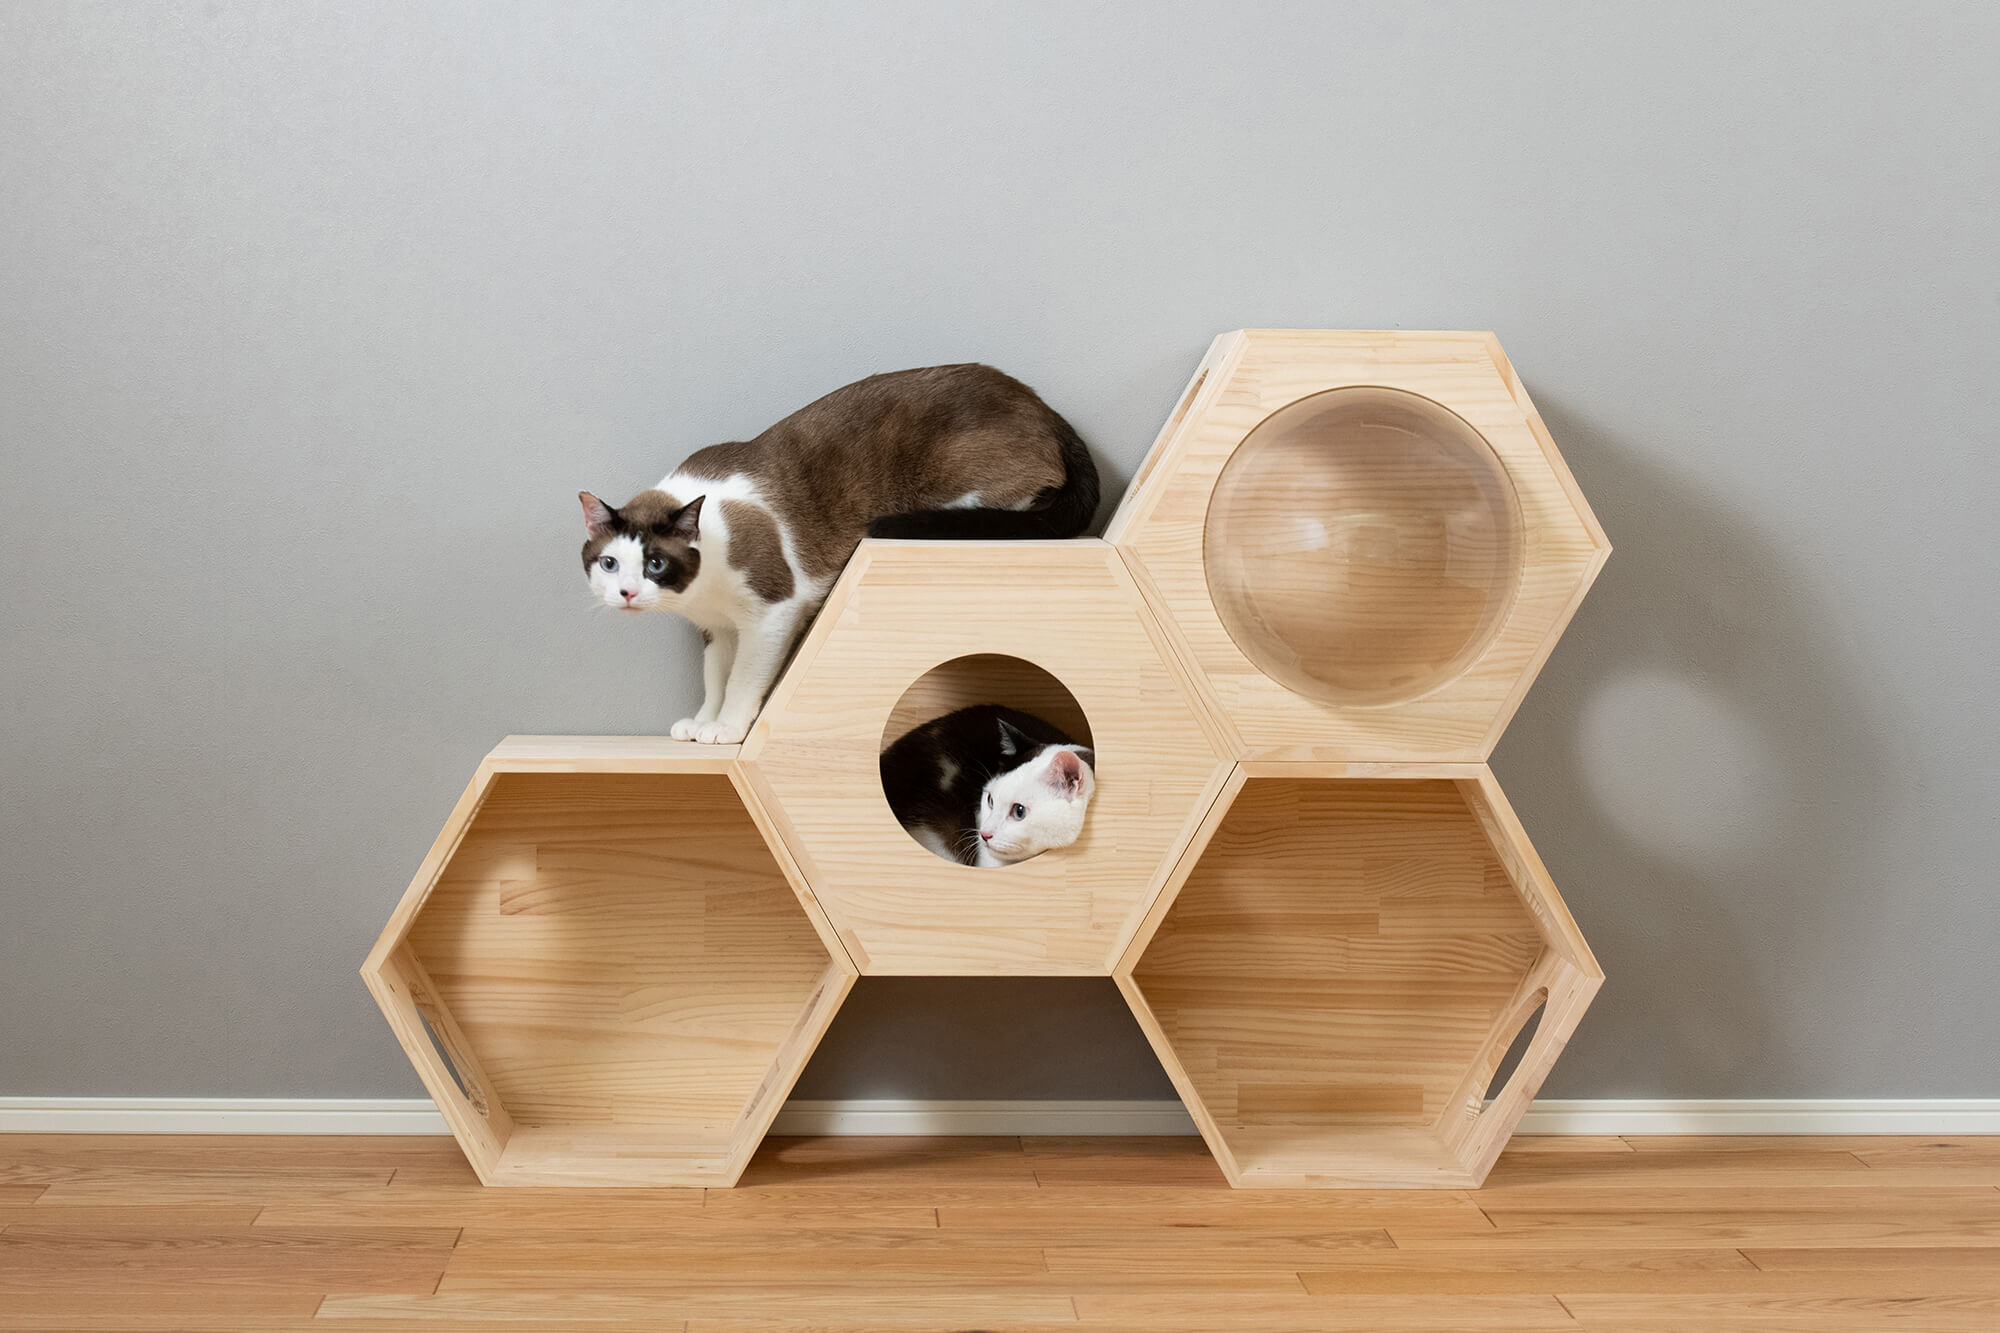 大型猫でも安心して遊べる木製のキャットタワー:多頭飼いにもおすすめ